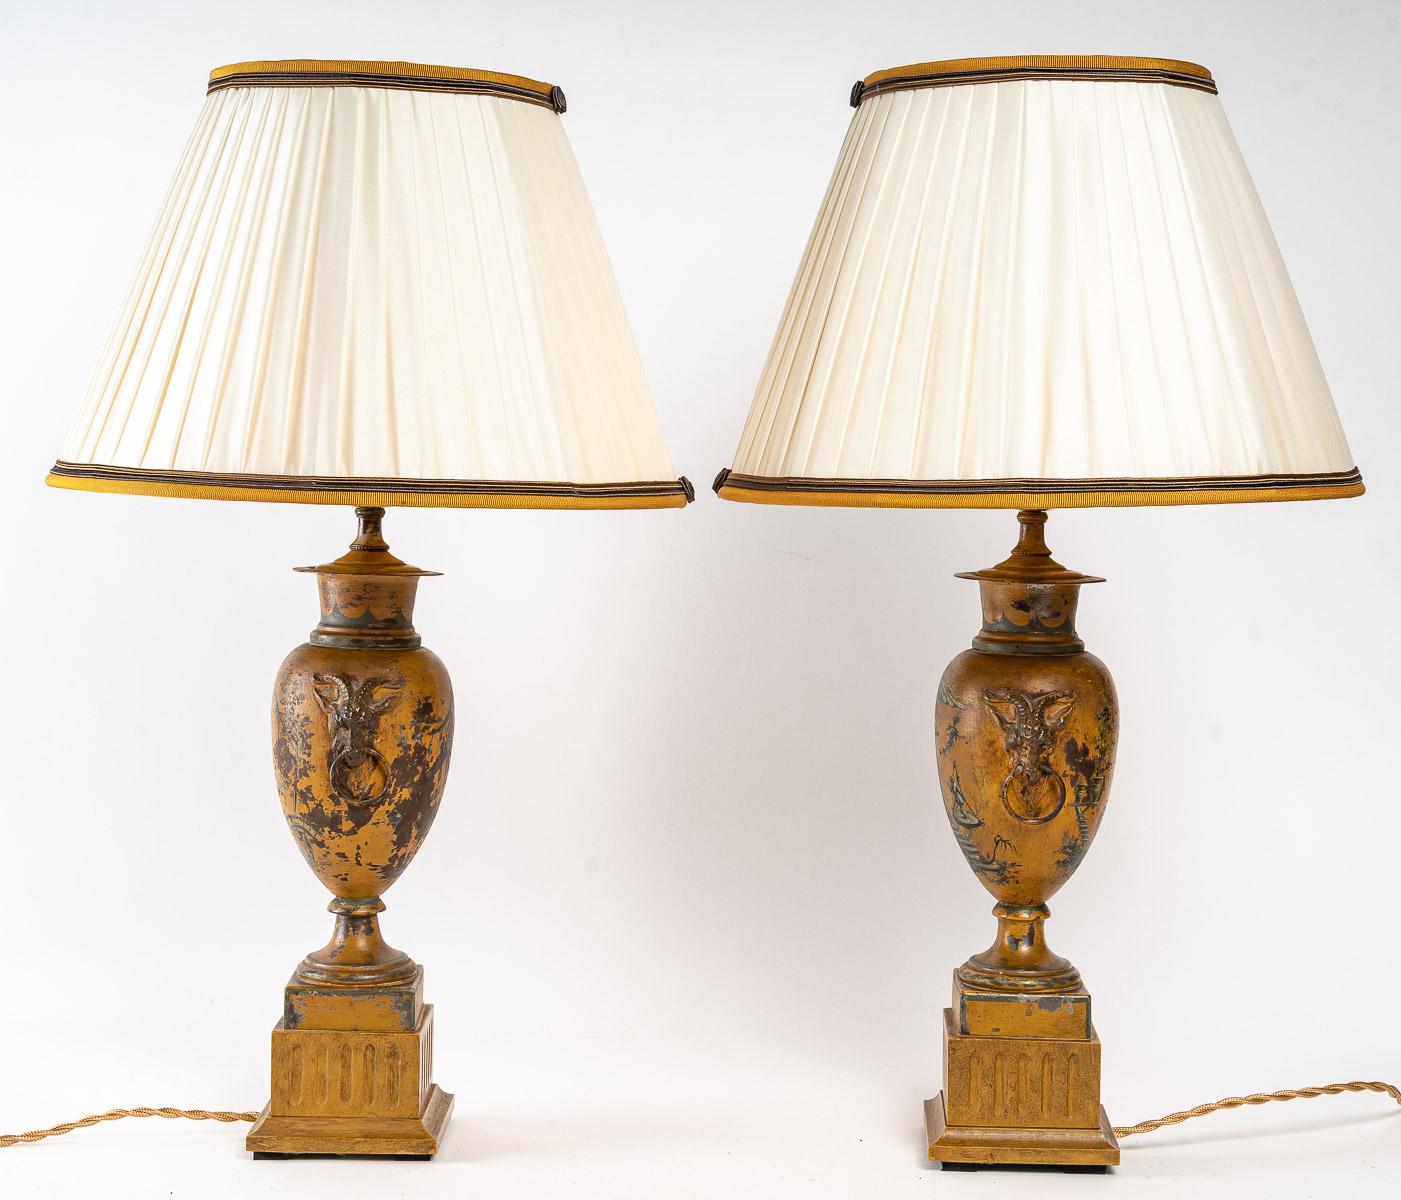 Paire de lampes en tôle peinte, 19e siècle

Paire de lampes en tôle peinte, 19e siècle, travail anglais.

Mesures : H : 58cm, D : 33 cm.